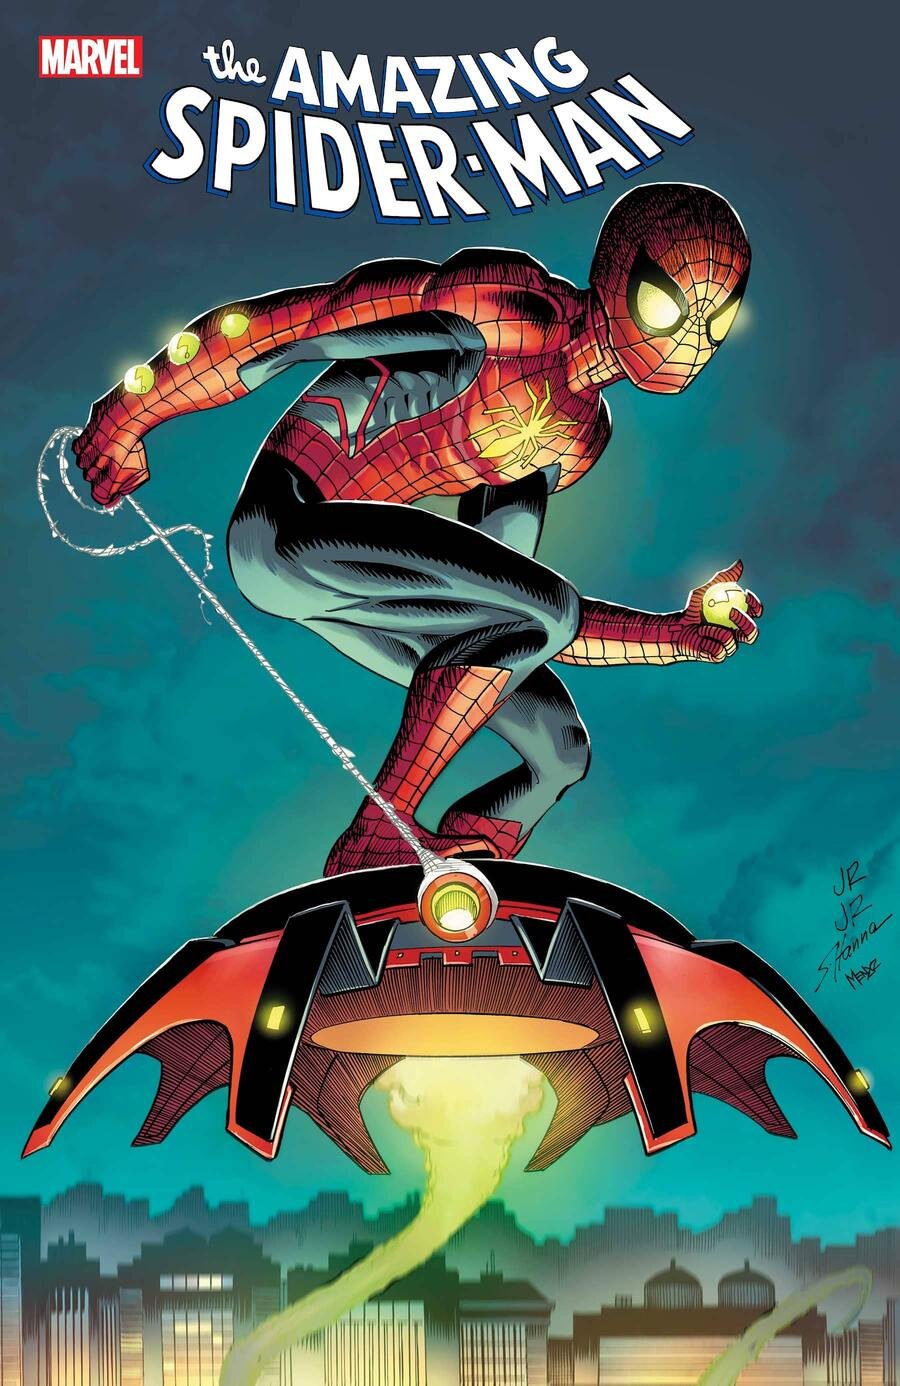 Cover di Amazing Spider-Man 8 di John Romita Jr.